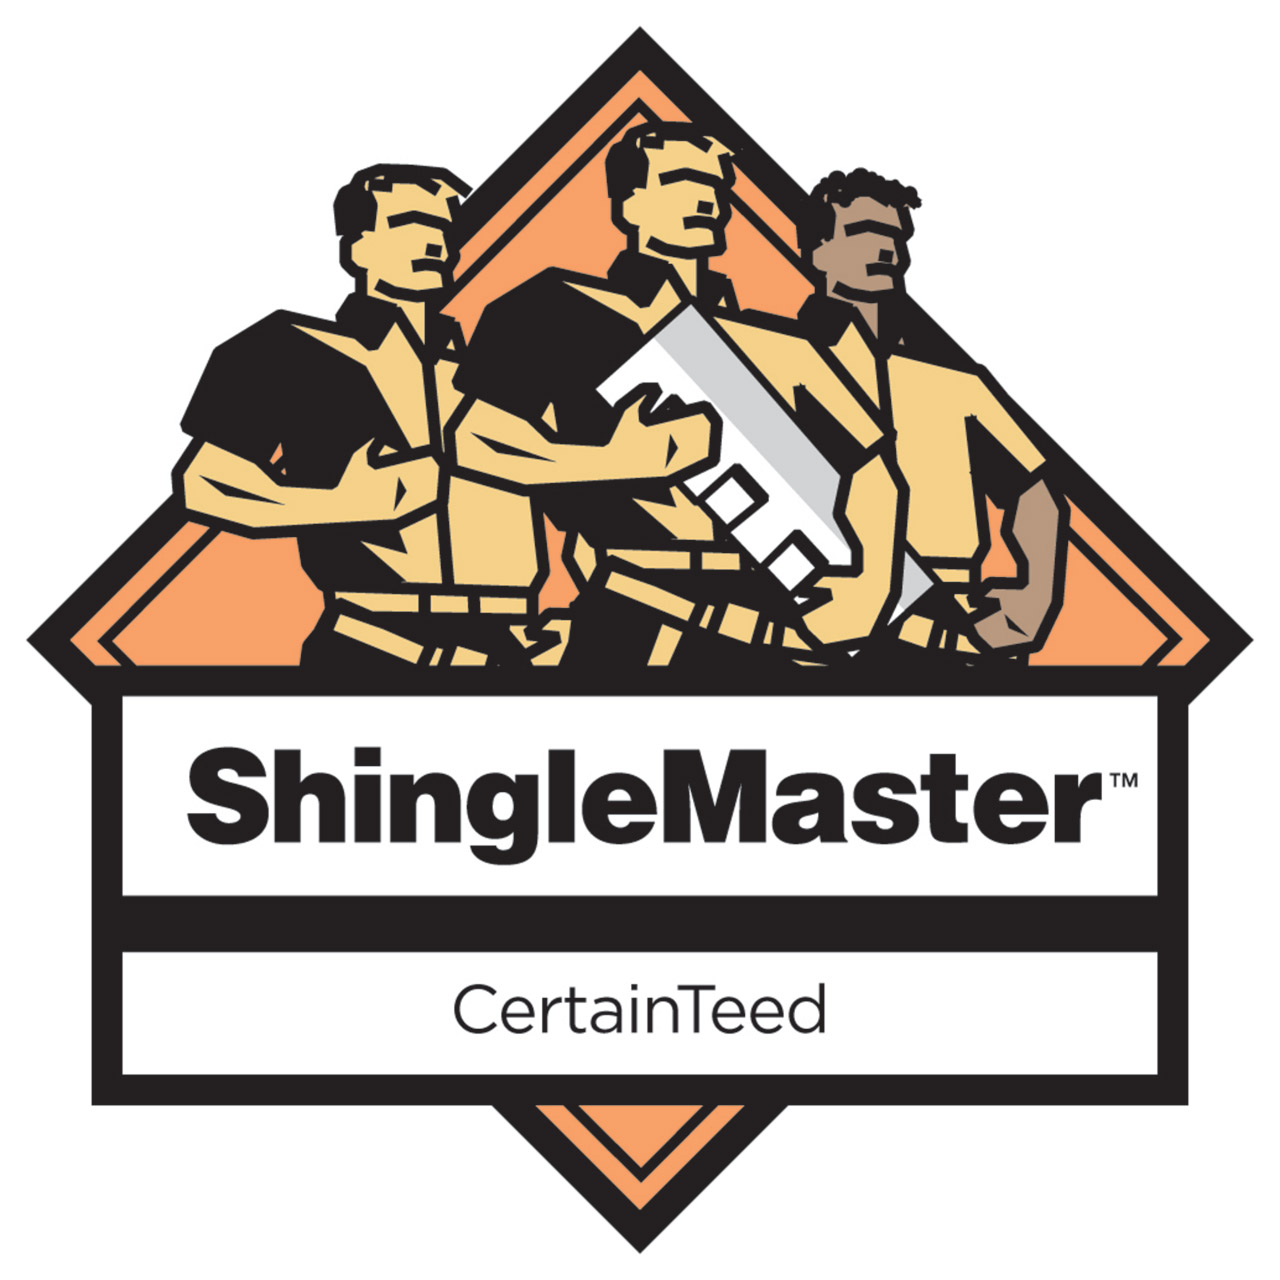 shinglemaster-badge1a